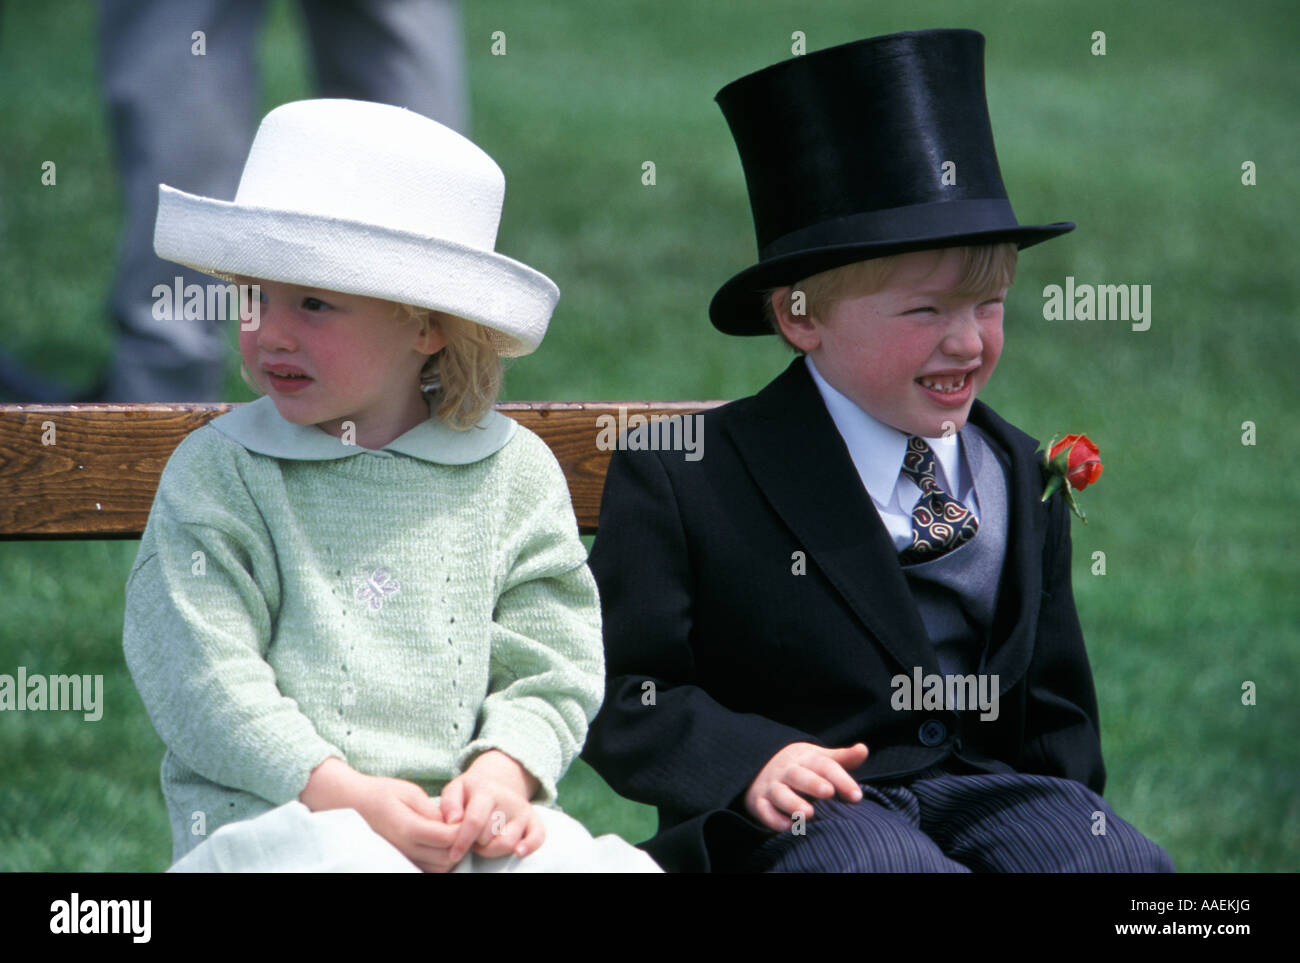 Ein Mädchen und ein Junge in der Oberschicht Kleid am Derby Tag Epsom Pferderennen Epsom Downs Epsom Surrey Vereinigtes Königreich Stockfoto